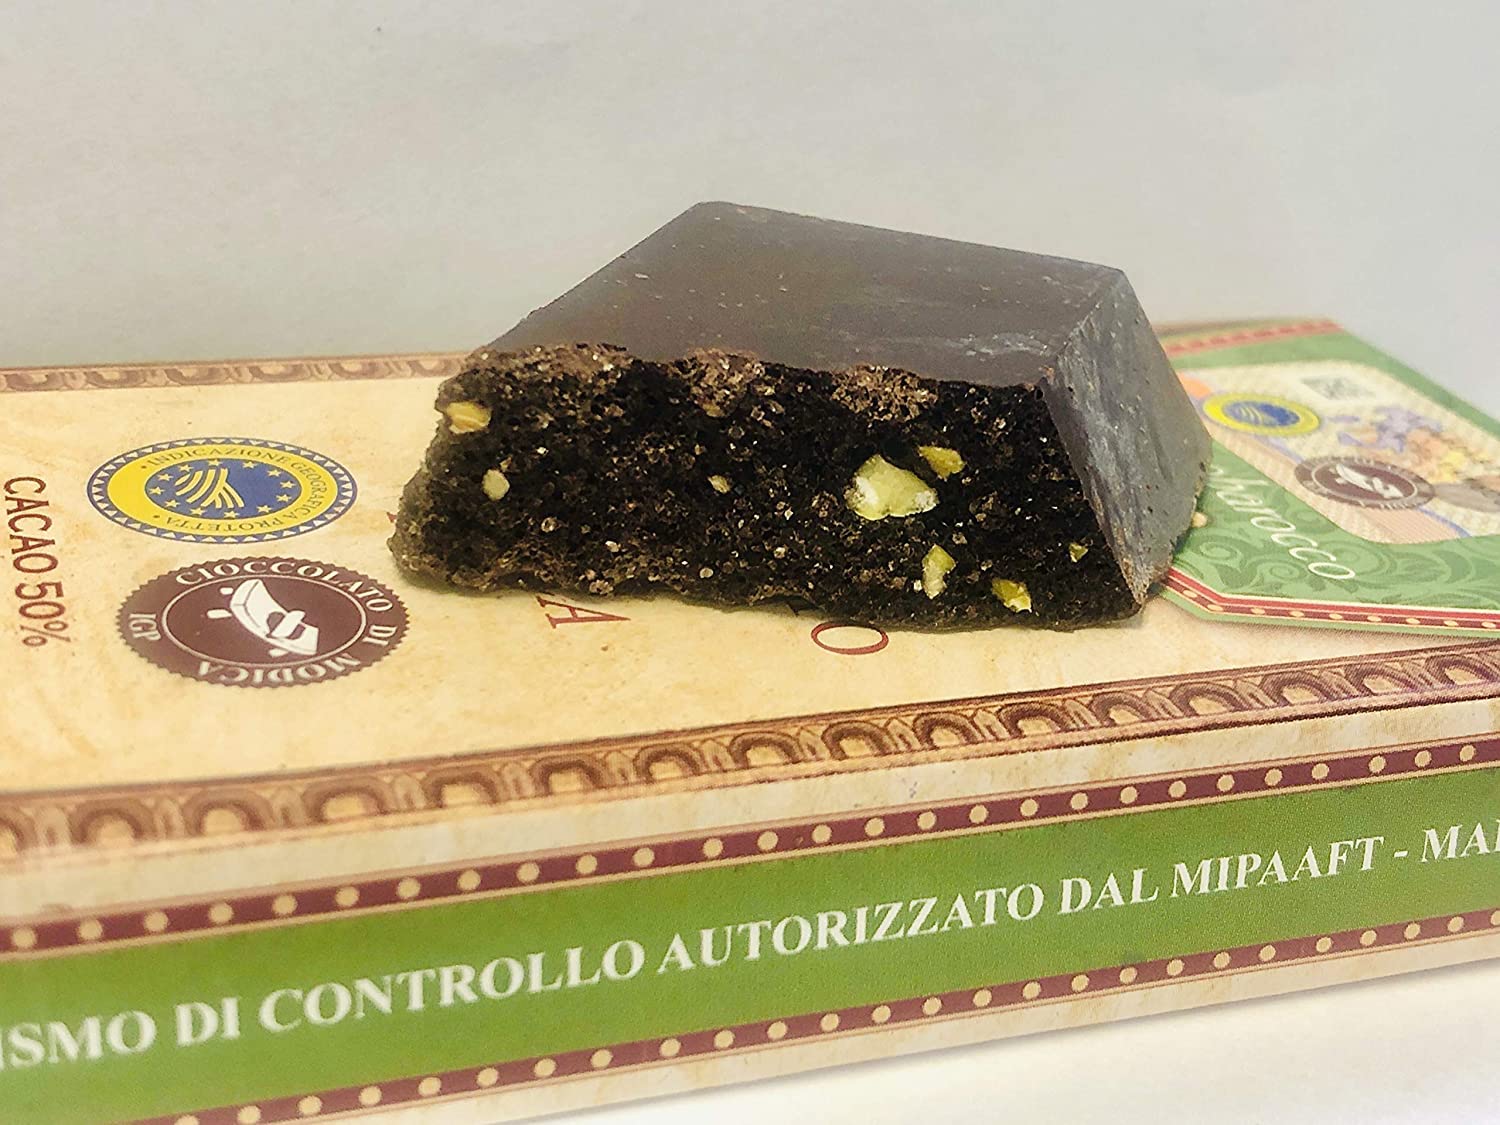 Modica Schokolade IGP mit sizilianischen Pistazien